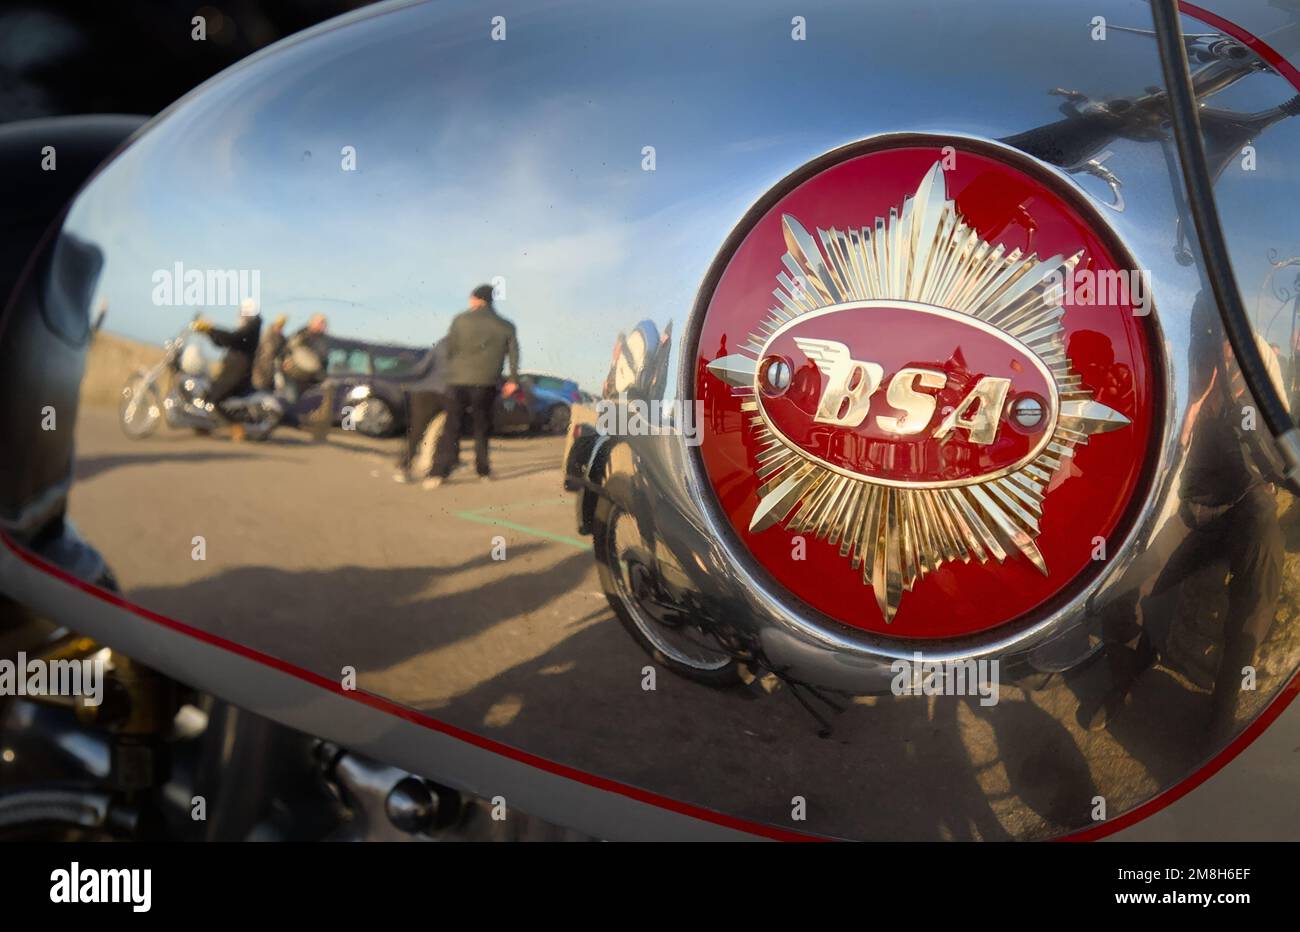 Réservoir d'essence chromé d'Une moto BSA avec emblème Gold Star et Reflet des gens et Mudeford Quay, Royaume-Uni Banque D'Images